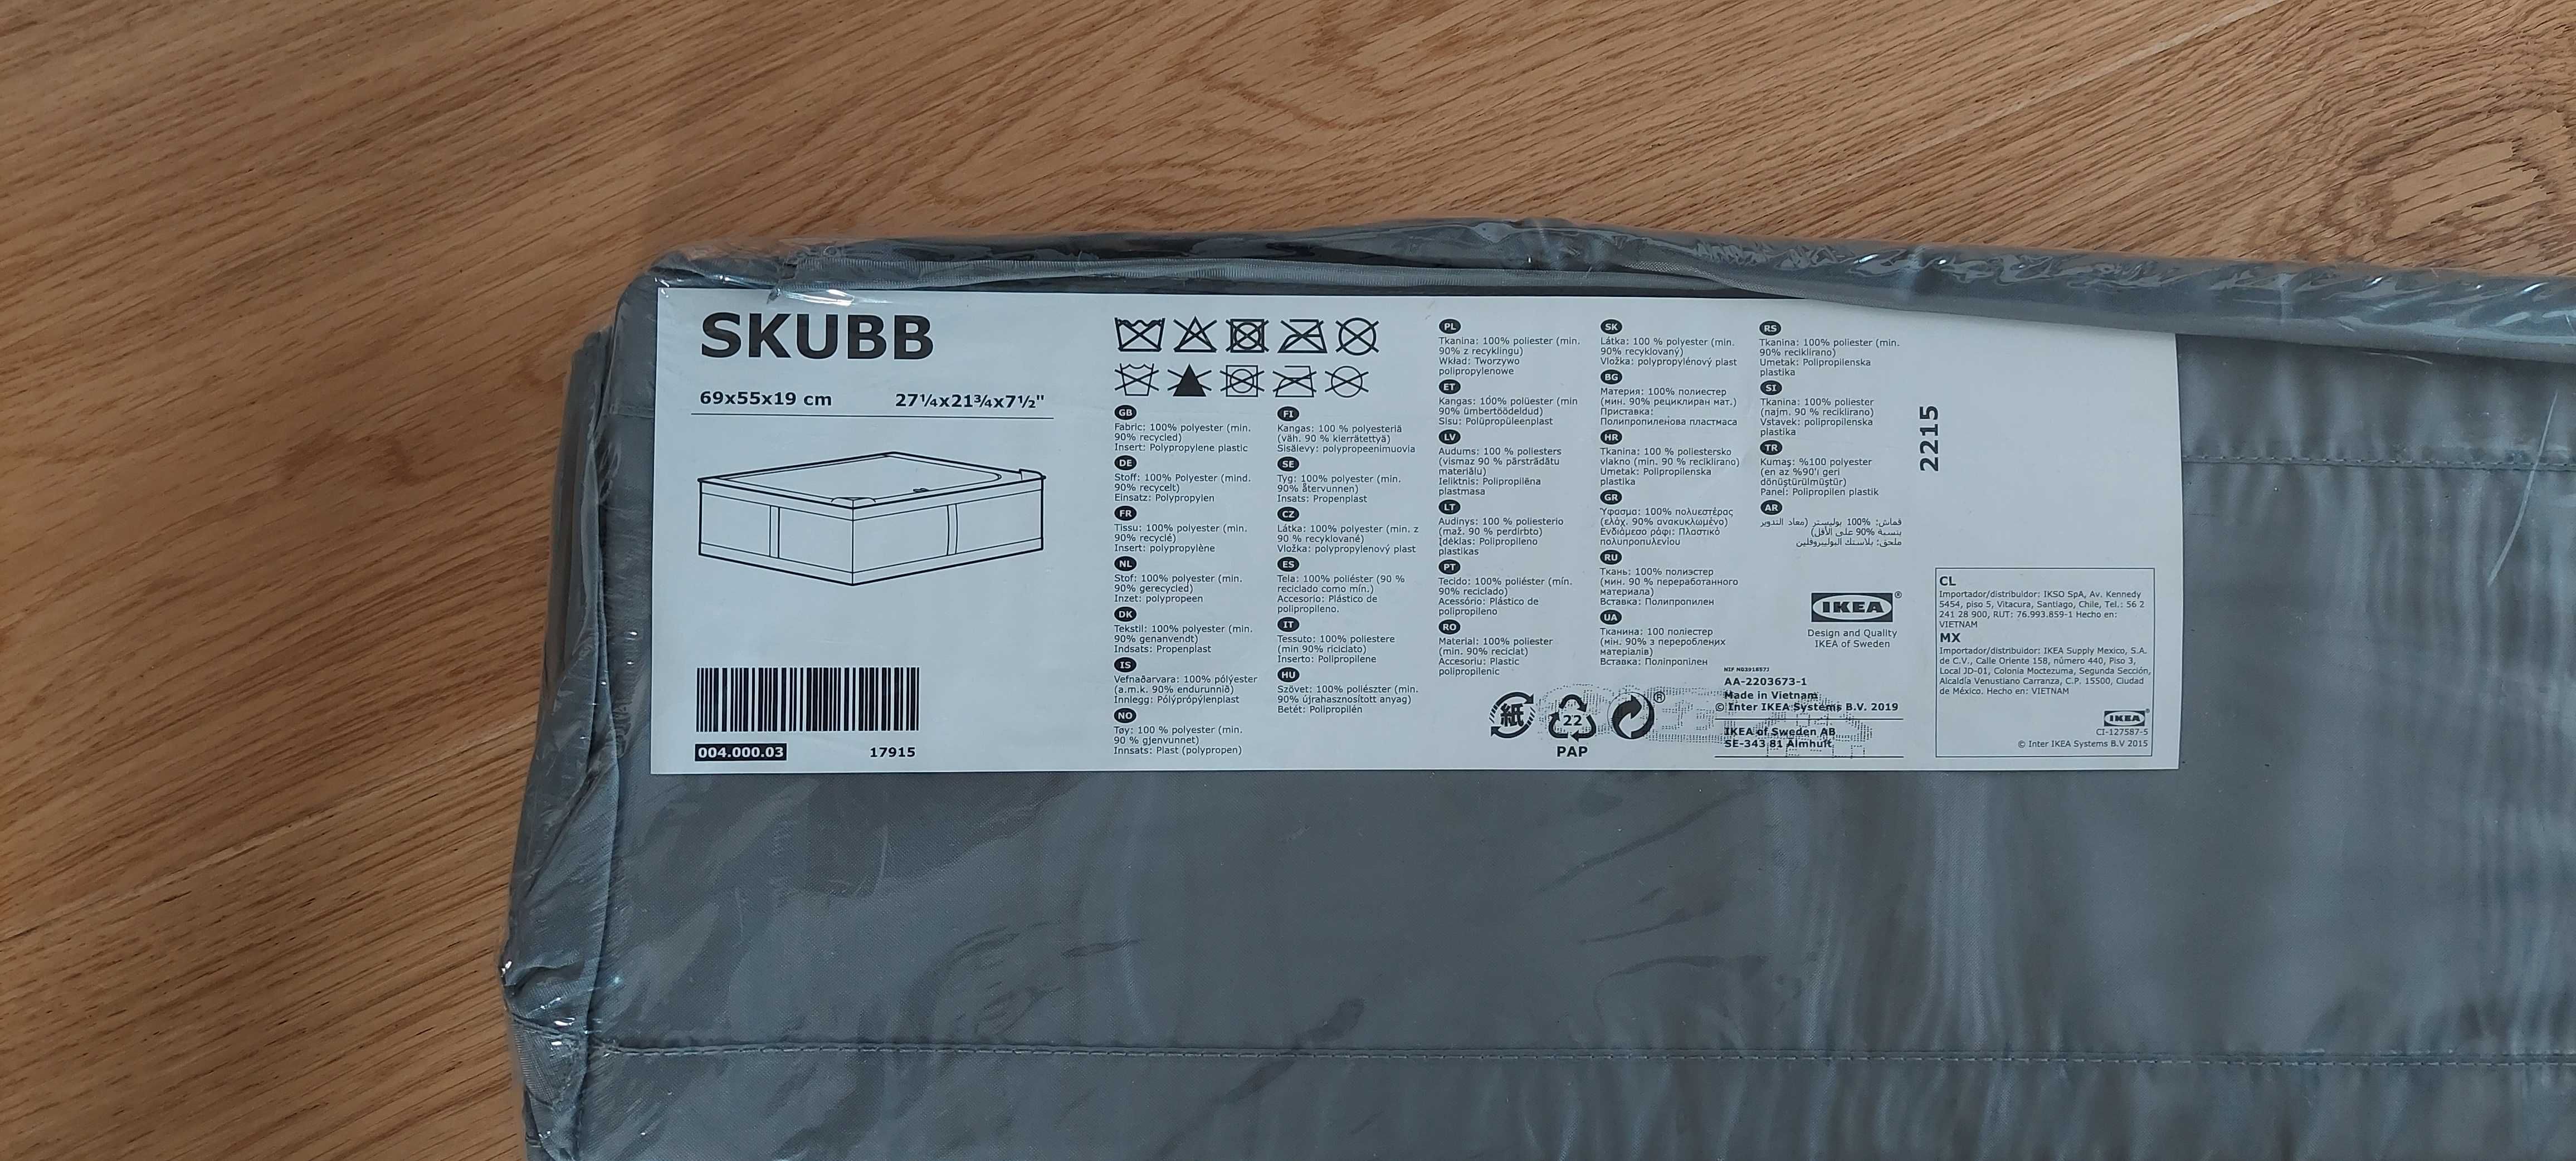 Pojemnik SKUBB na ubrania/pościel IKEA  69x55x19 cm